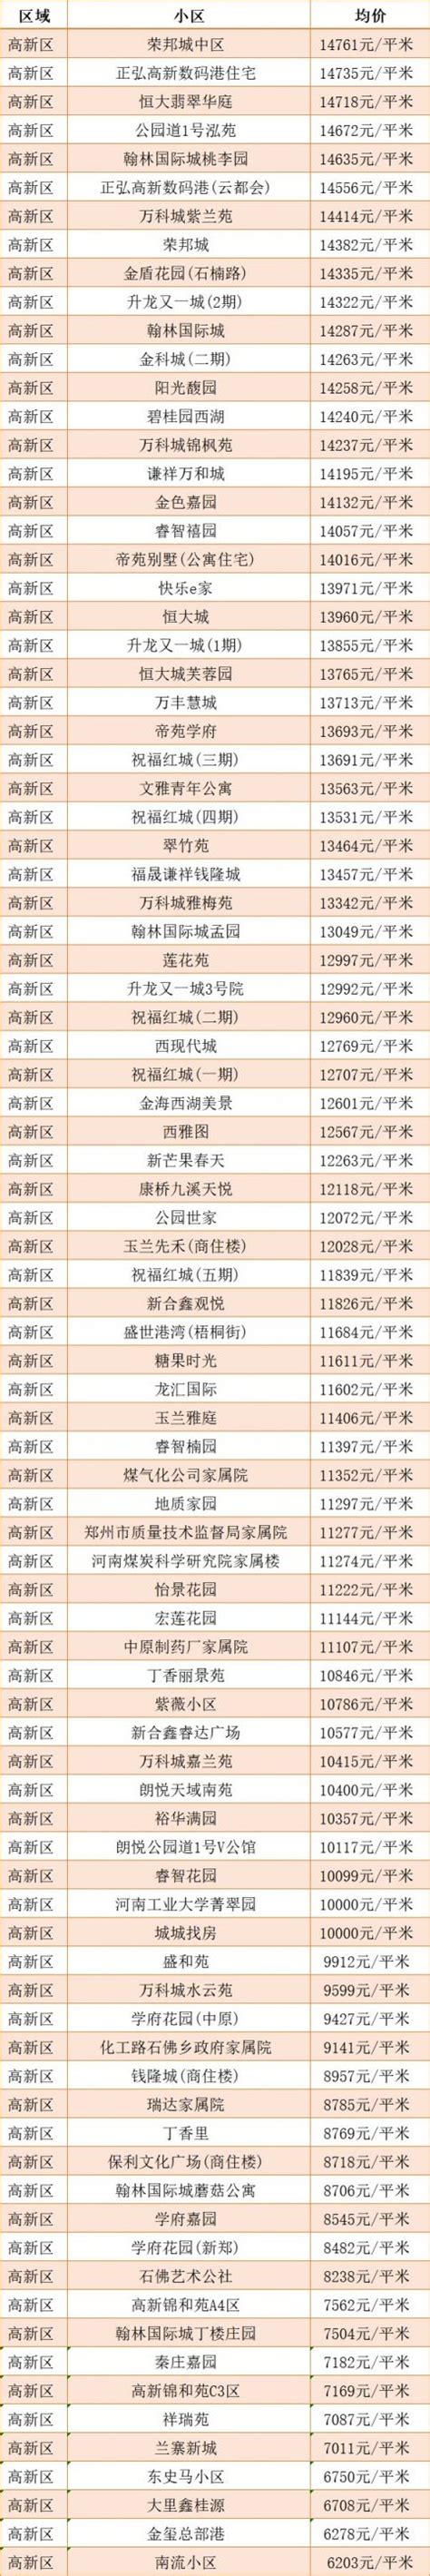 2020年7月郑州高新区房价走势最新消息- 郑州本地宝